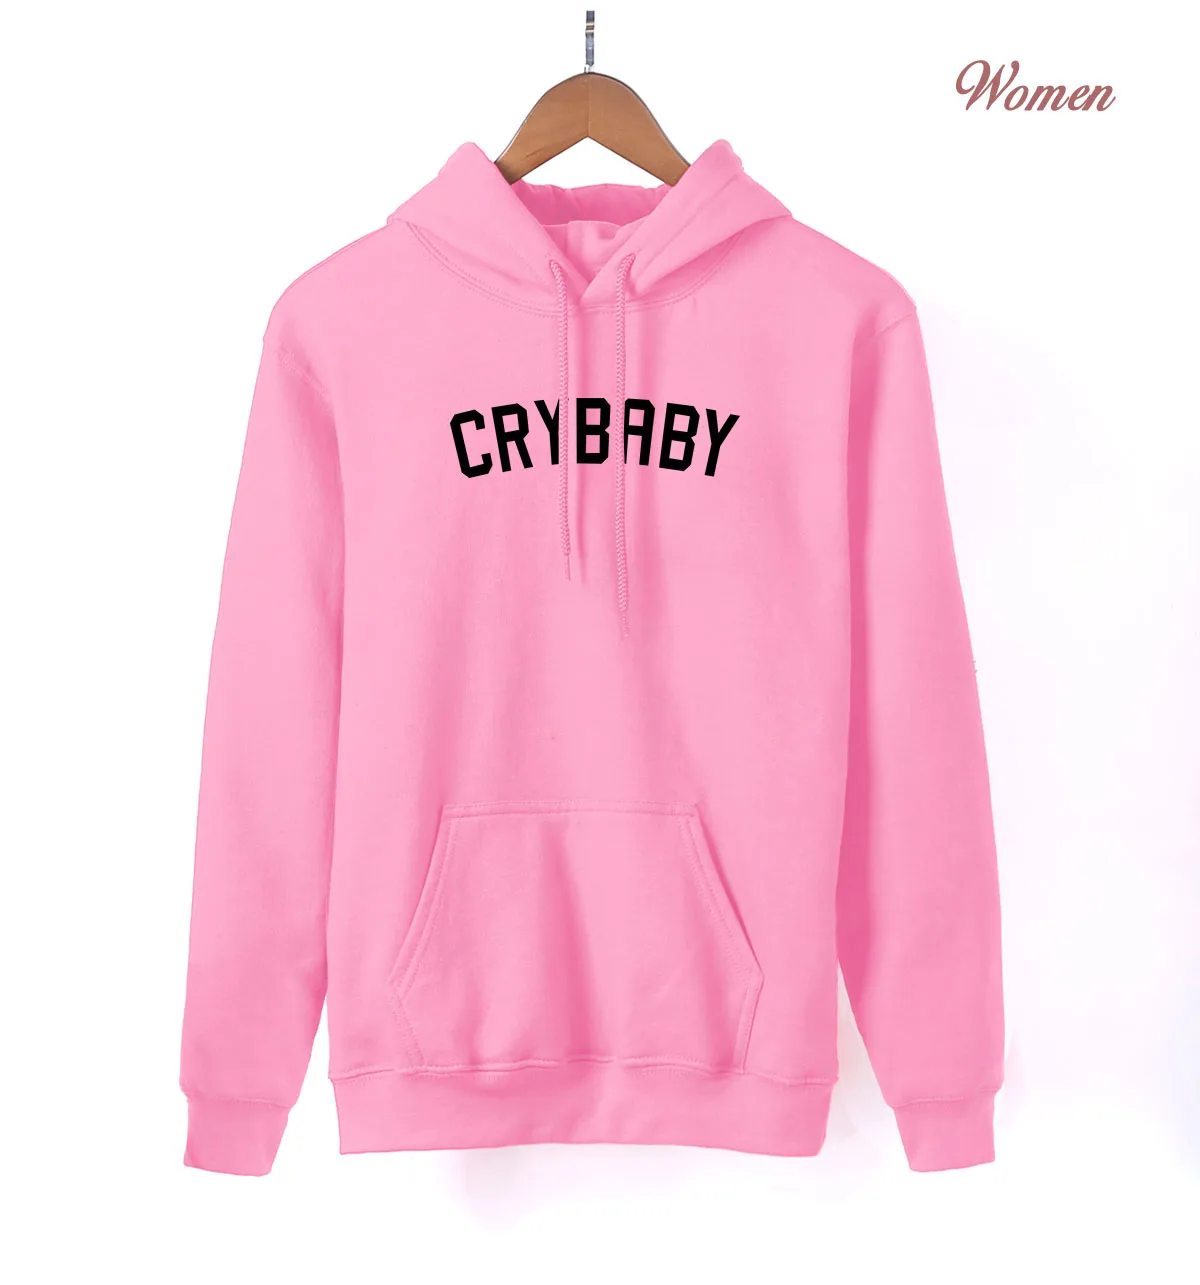 Крибэби плач ребенок каваи розовый свитер женский стиль весна осень Женская толстовка флис Повседневная Уличная одежда - Цвет: pink 1